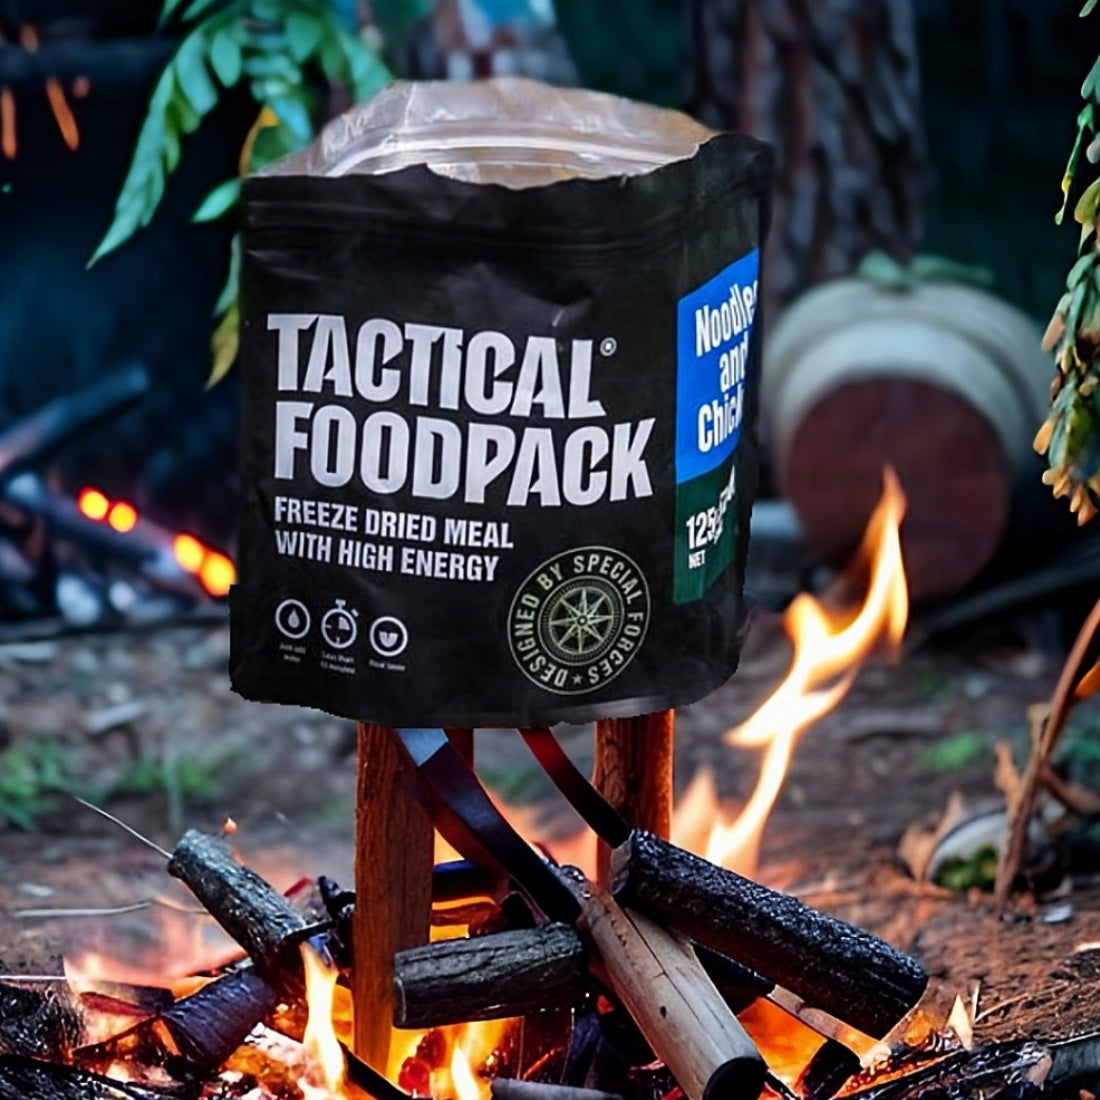 Tactical Foodpack Rice and Pork - Taktische Notfallnahrung für Spezialkräfte in Krisensituationen